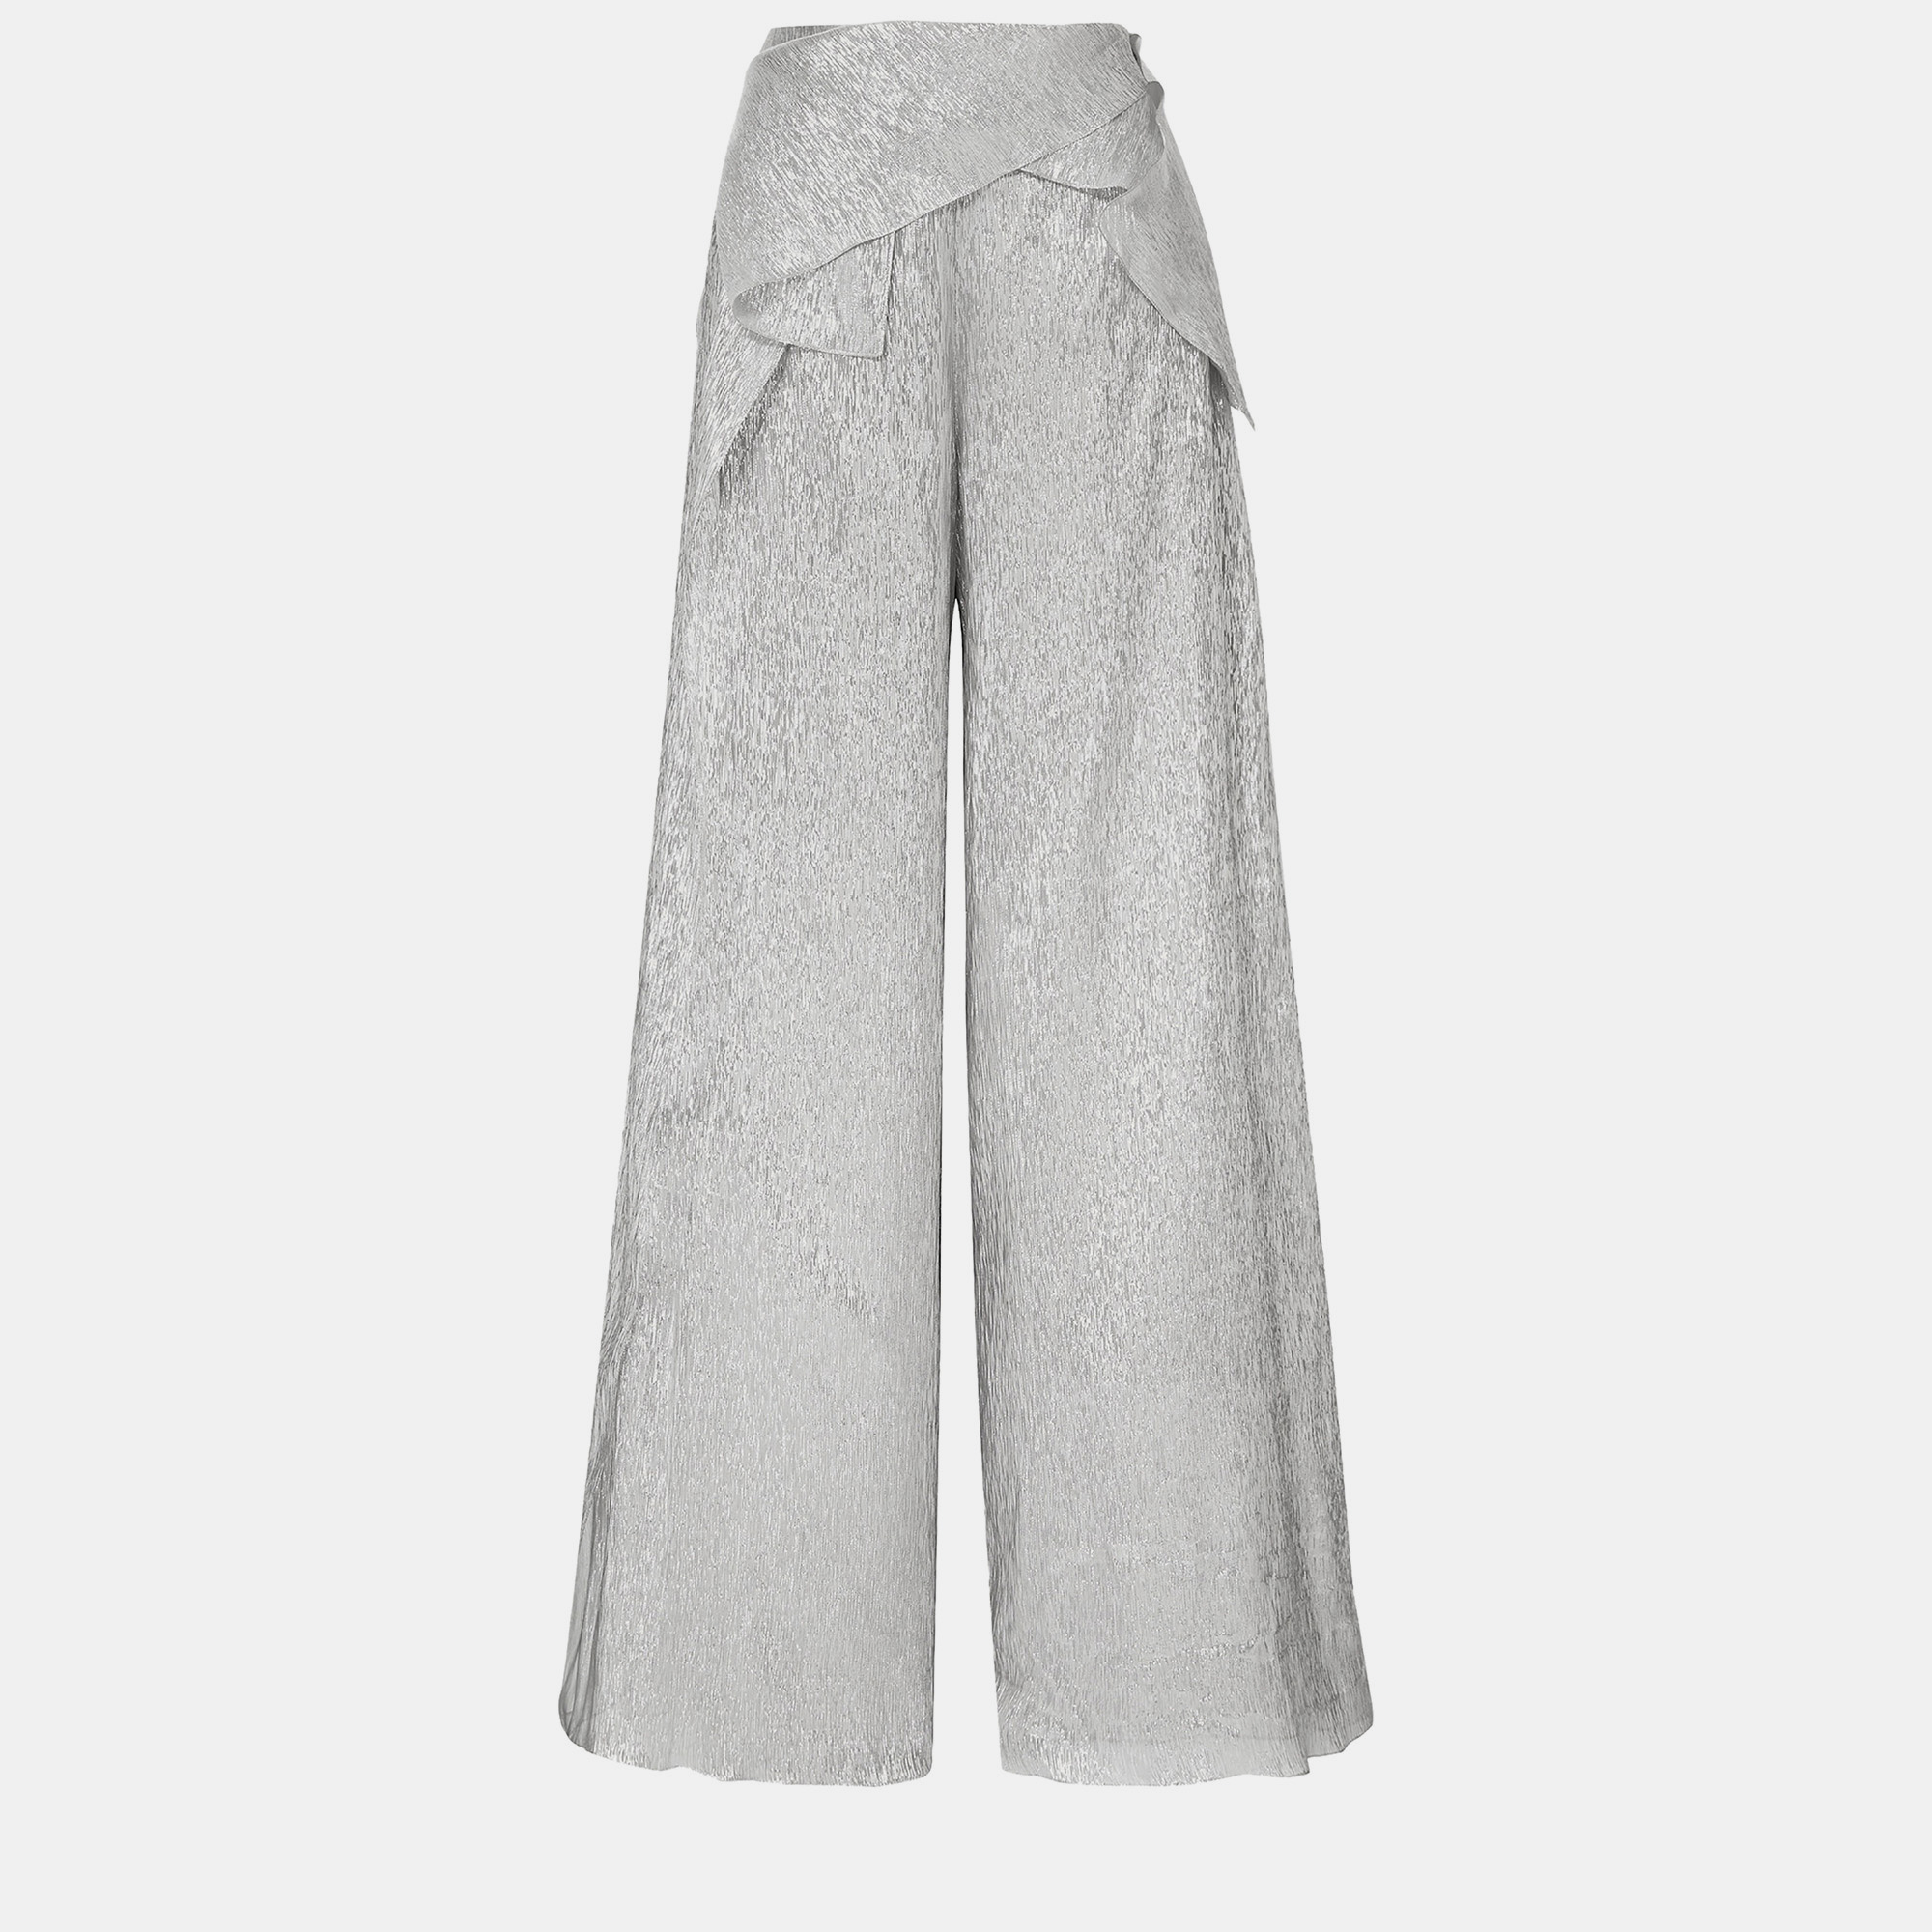 Roland mouret silver crinkled silk wide leg pants 3xl (uk 20)